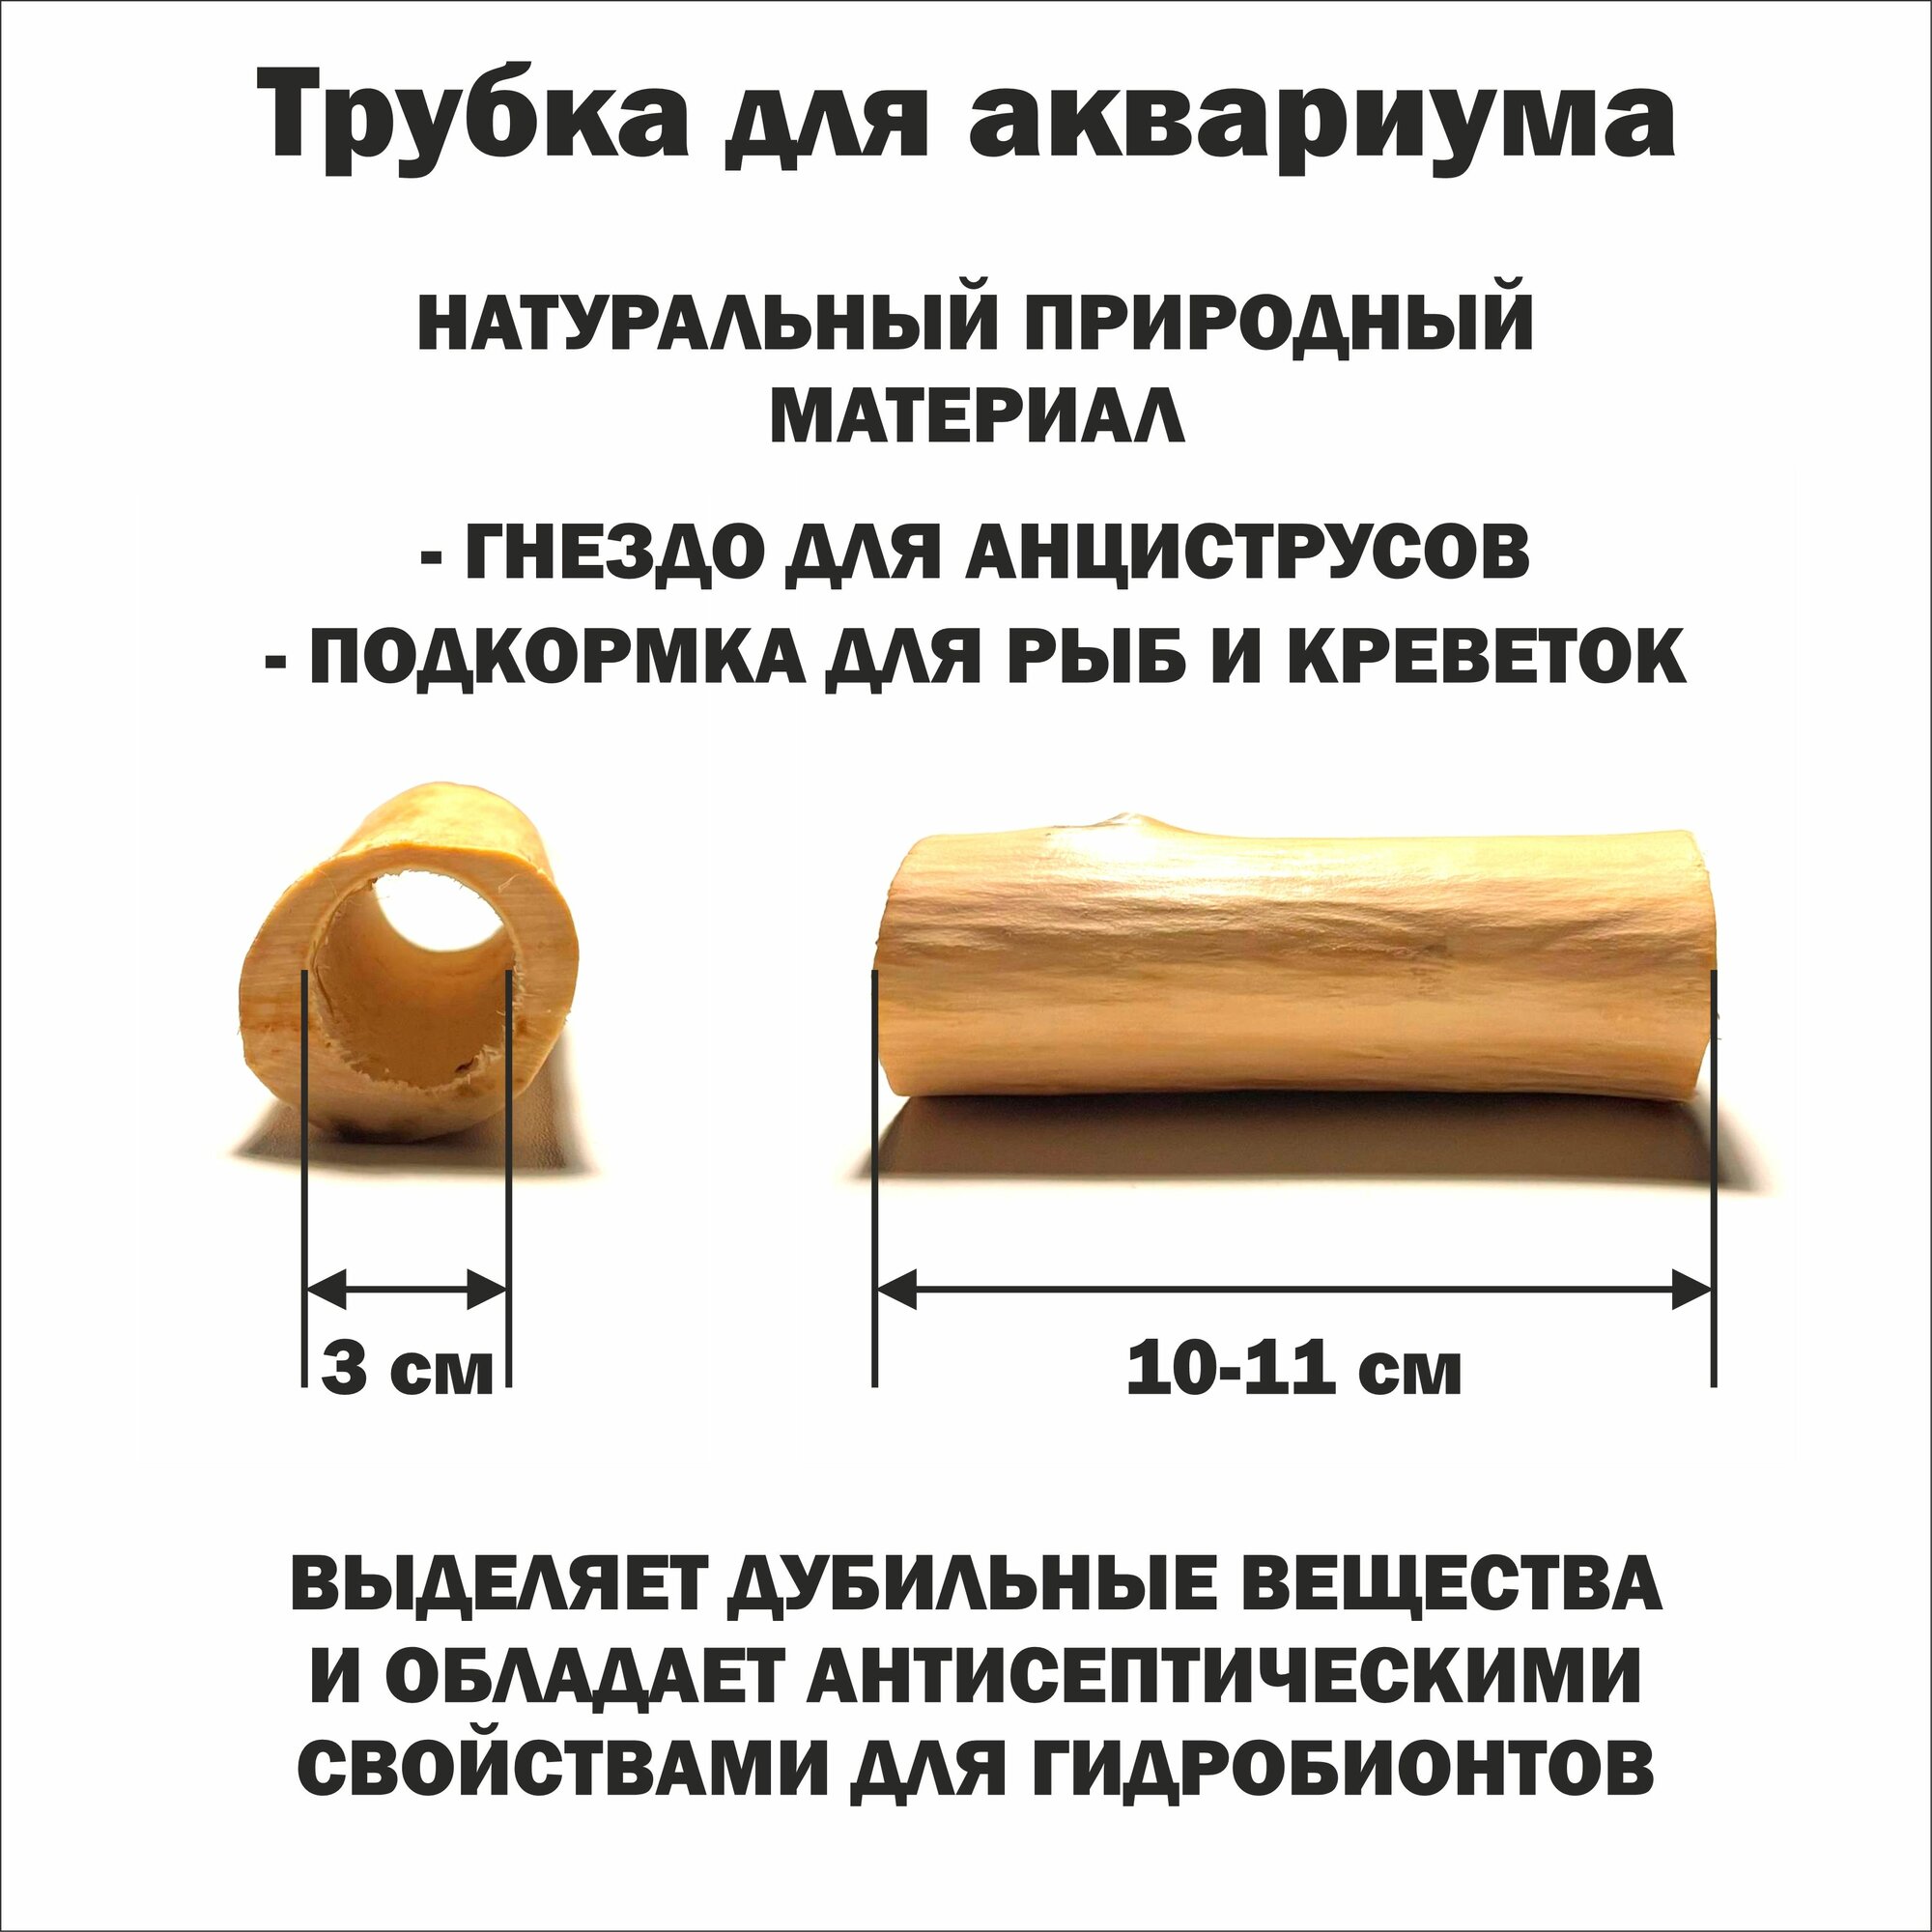 Трубка деревянная для сомов и креветок 10-11 см./ гнездо для анциструсов